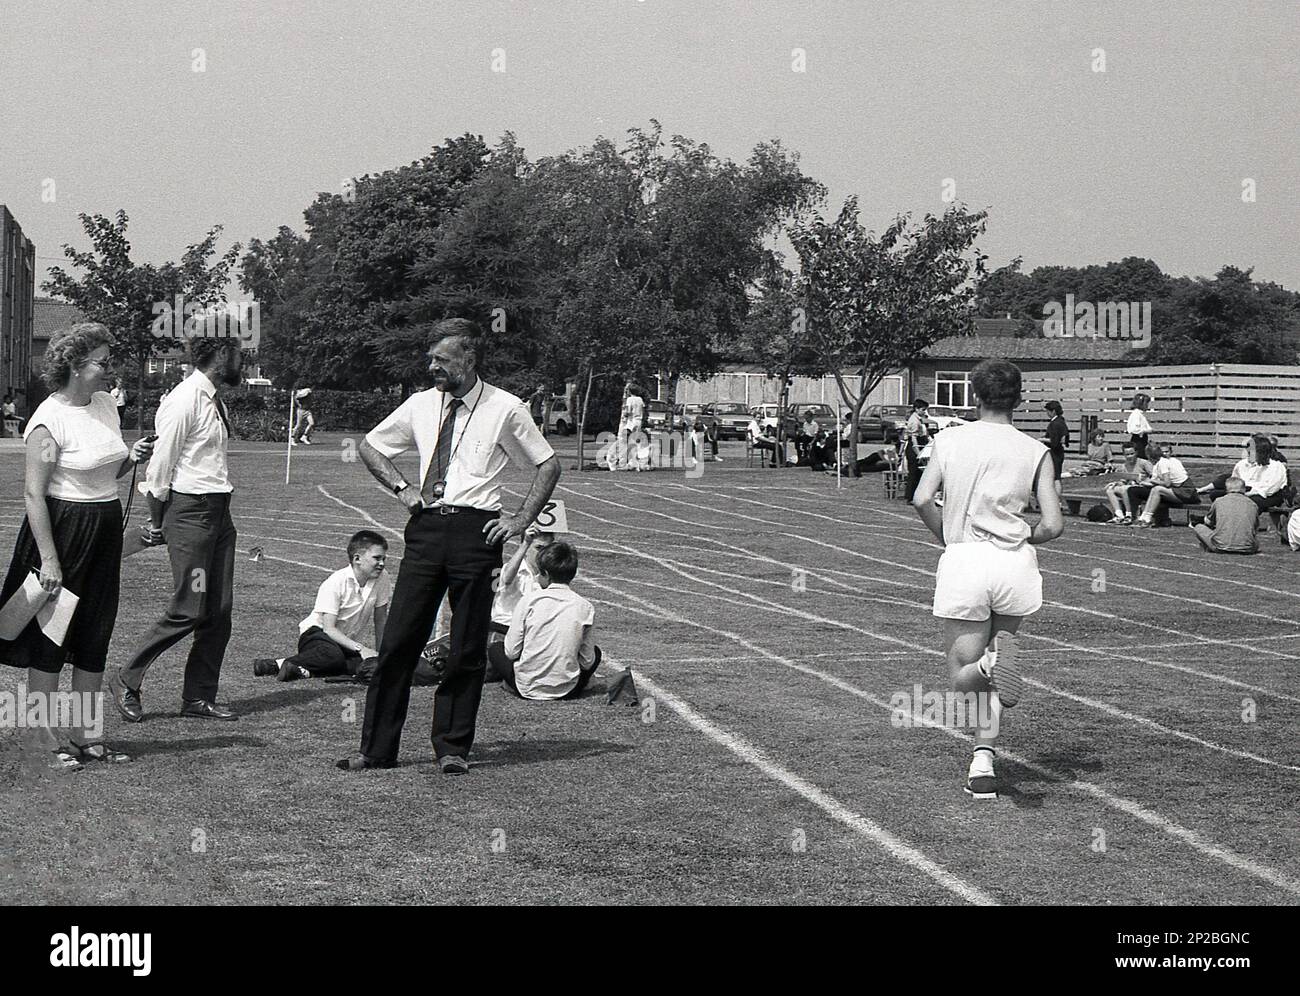 1989, giornata di sport scolastici in una scuola secondaria, un ragazzo di scuola adolescente maschile che gareggia in una corsa in erba con una signora insegnante in piedi accanto, contando i giri, Sleaford, Inghilterra, Regno Unito. Foto Stock